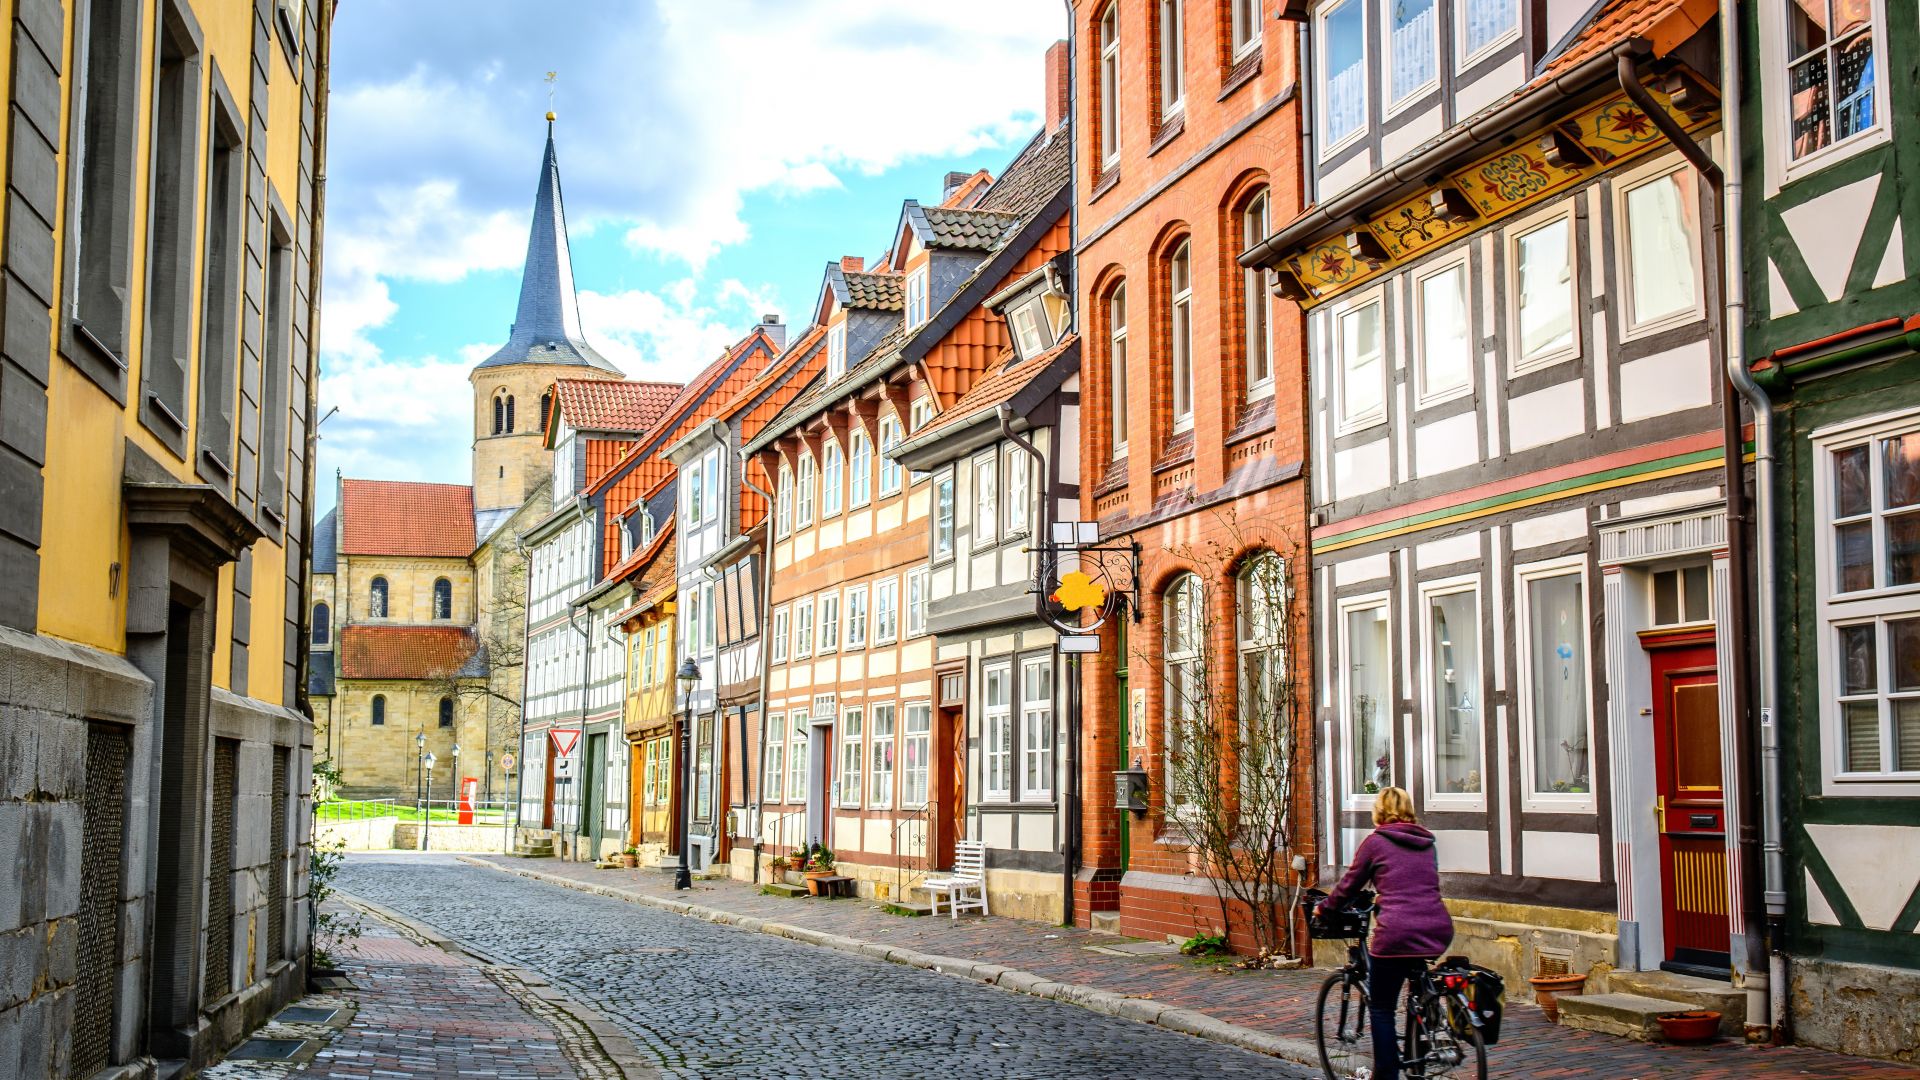 Goslar: Une cycliste traverse une rue avec des maisons à colombages